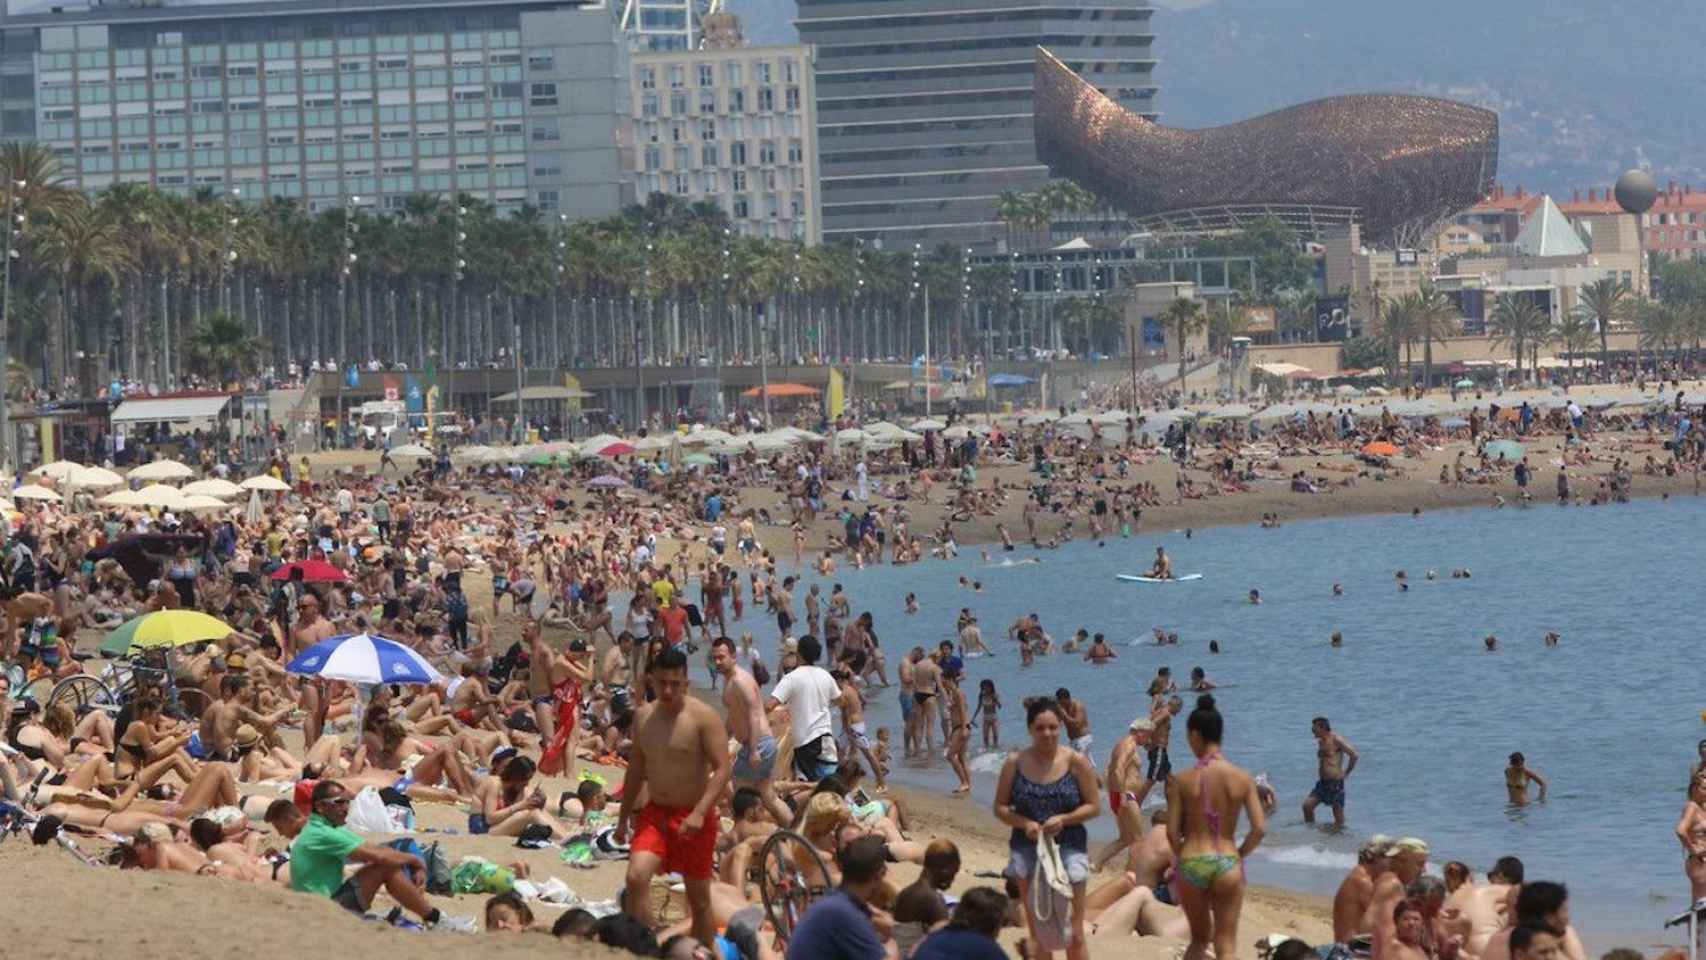 La playa de La Barceloneta, una de las playas de Barcelona con mayor afluencia, a rebosar de gente en una imagen de archivo / EFE